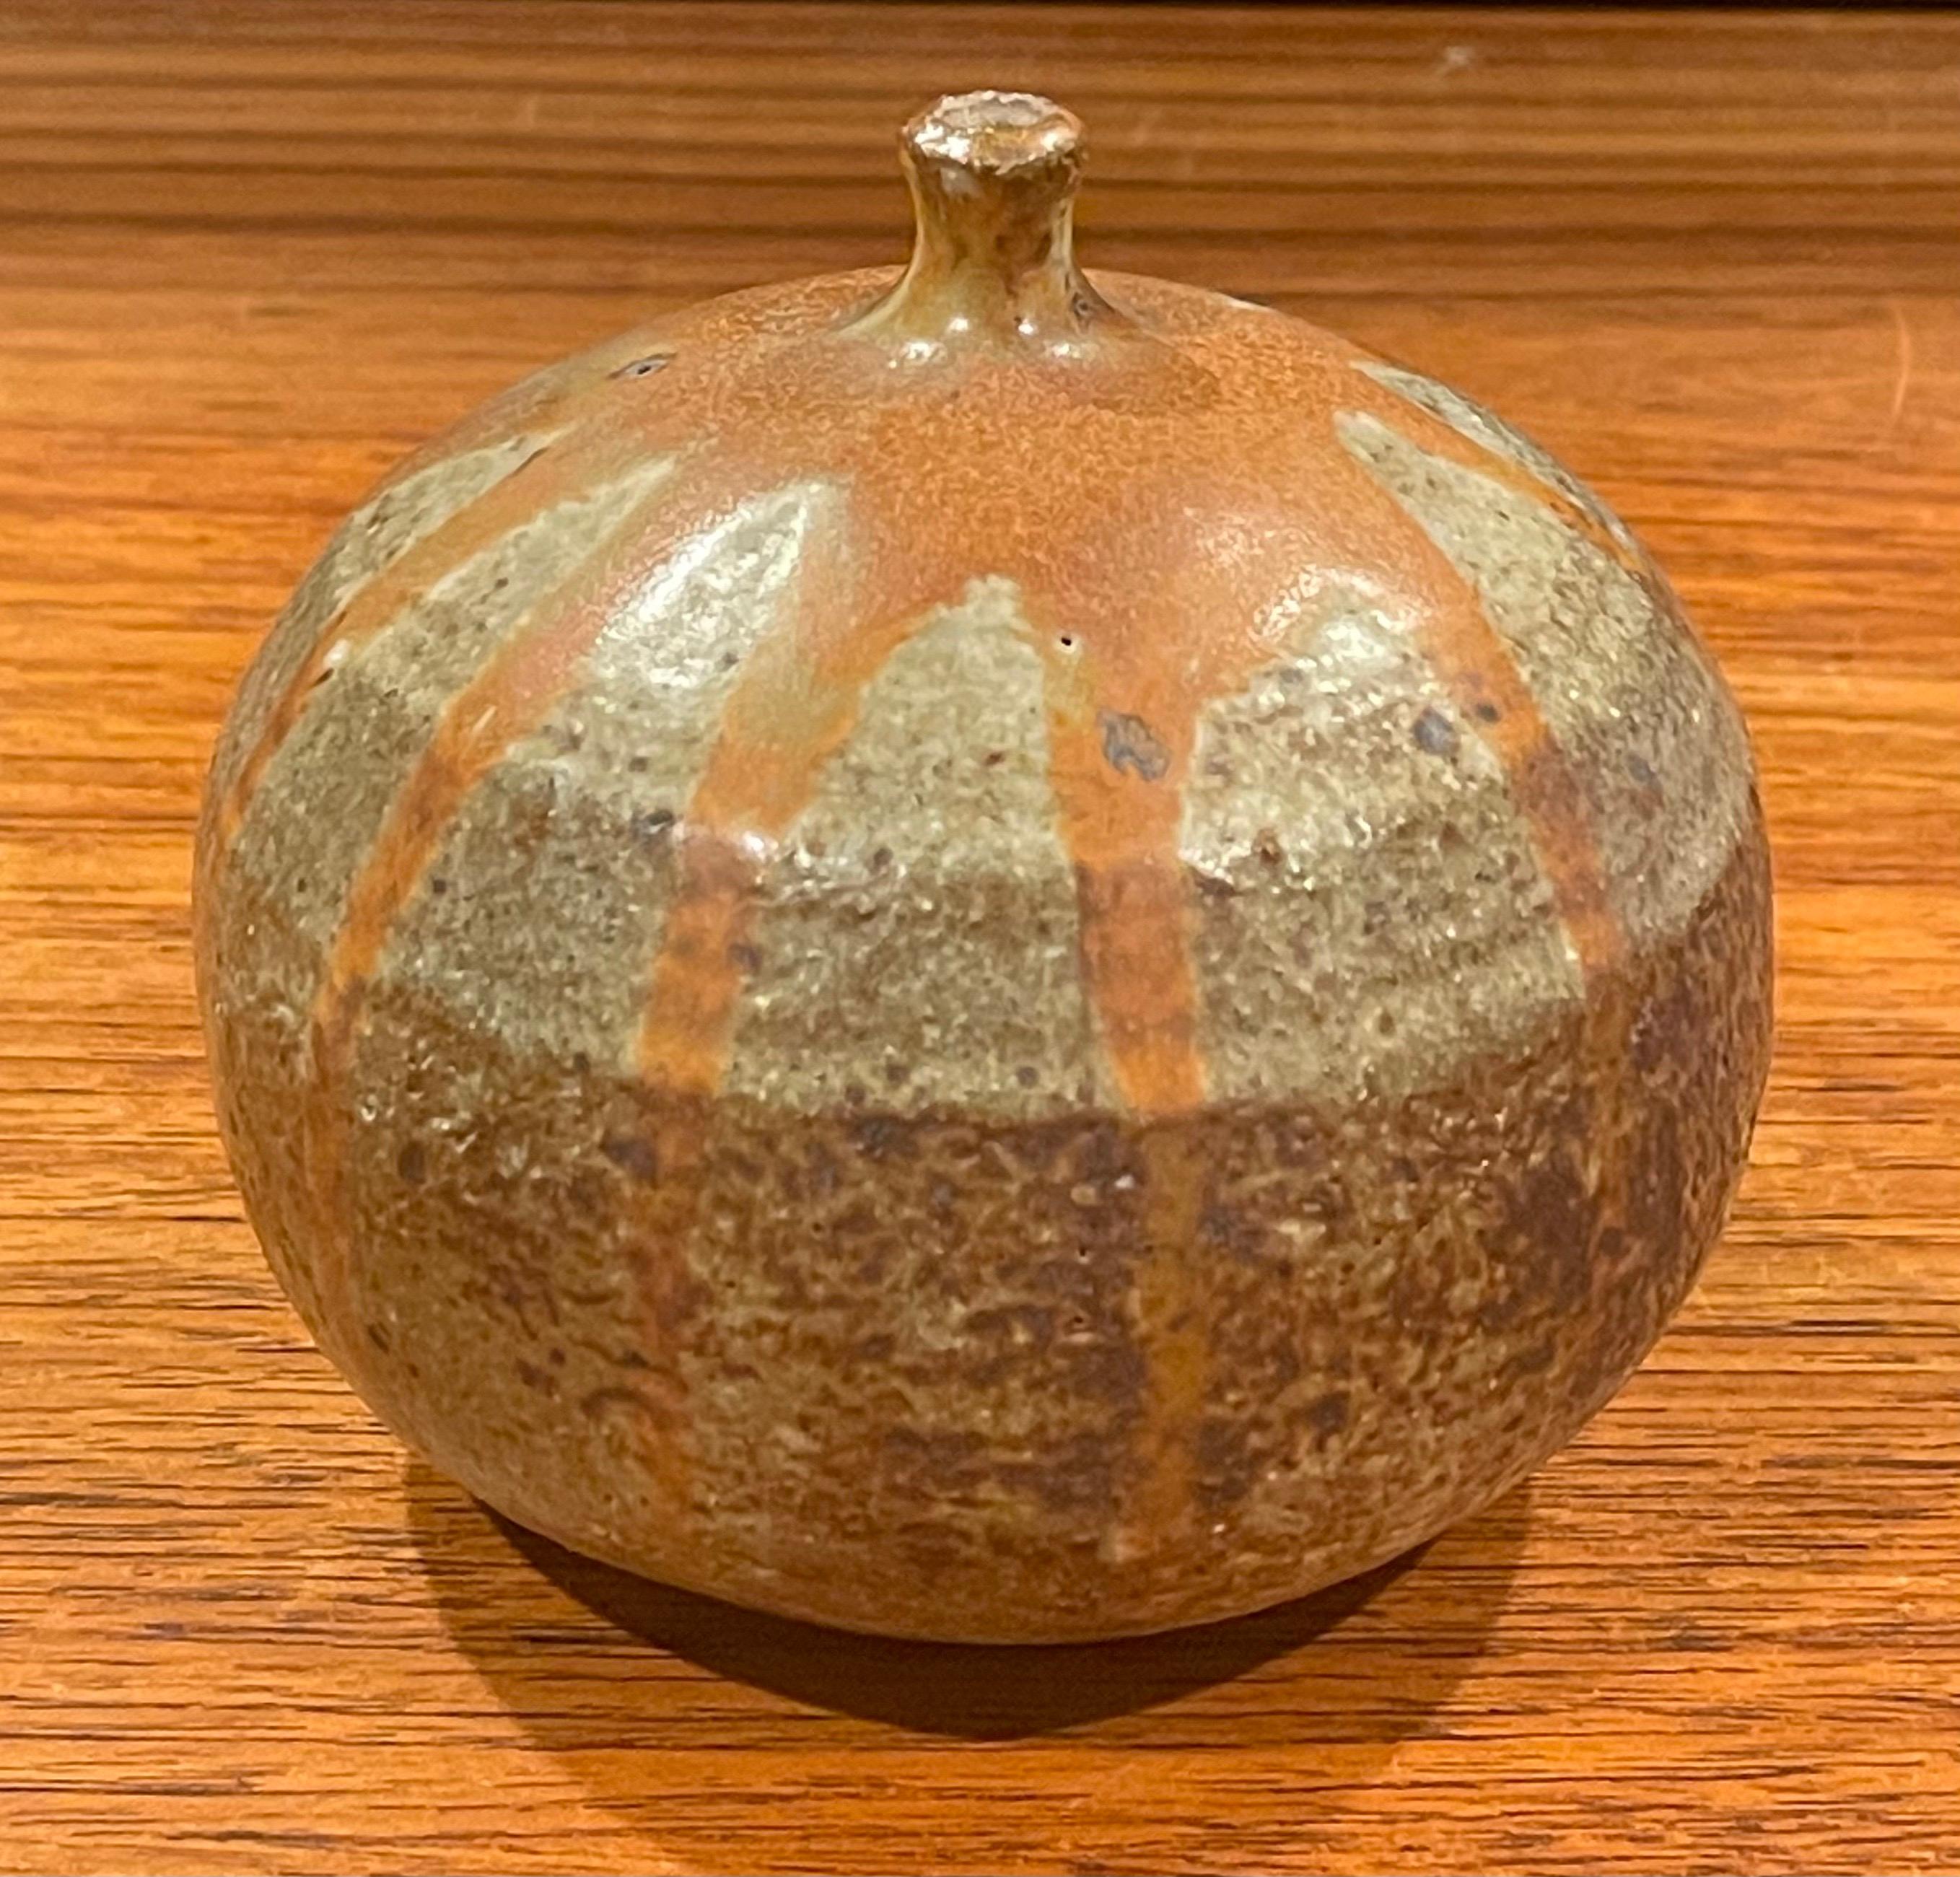 MCM runde, signierte Knospenvase aus Steingut, ca. 1970er Jahre. Diese Vase ist in ausgezeichnetem gebrauchten Zustand ohne Chips oder Risse und misst 4,5